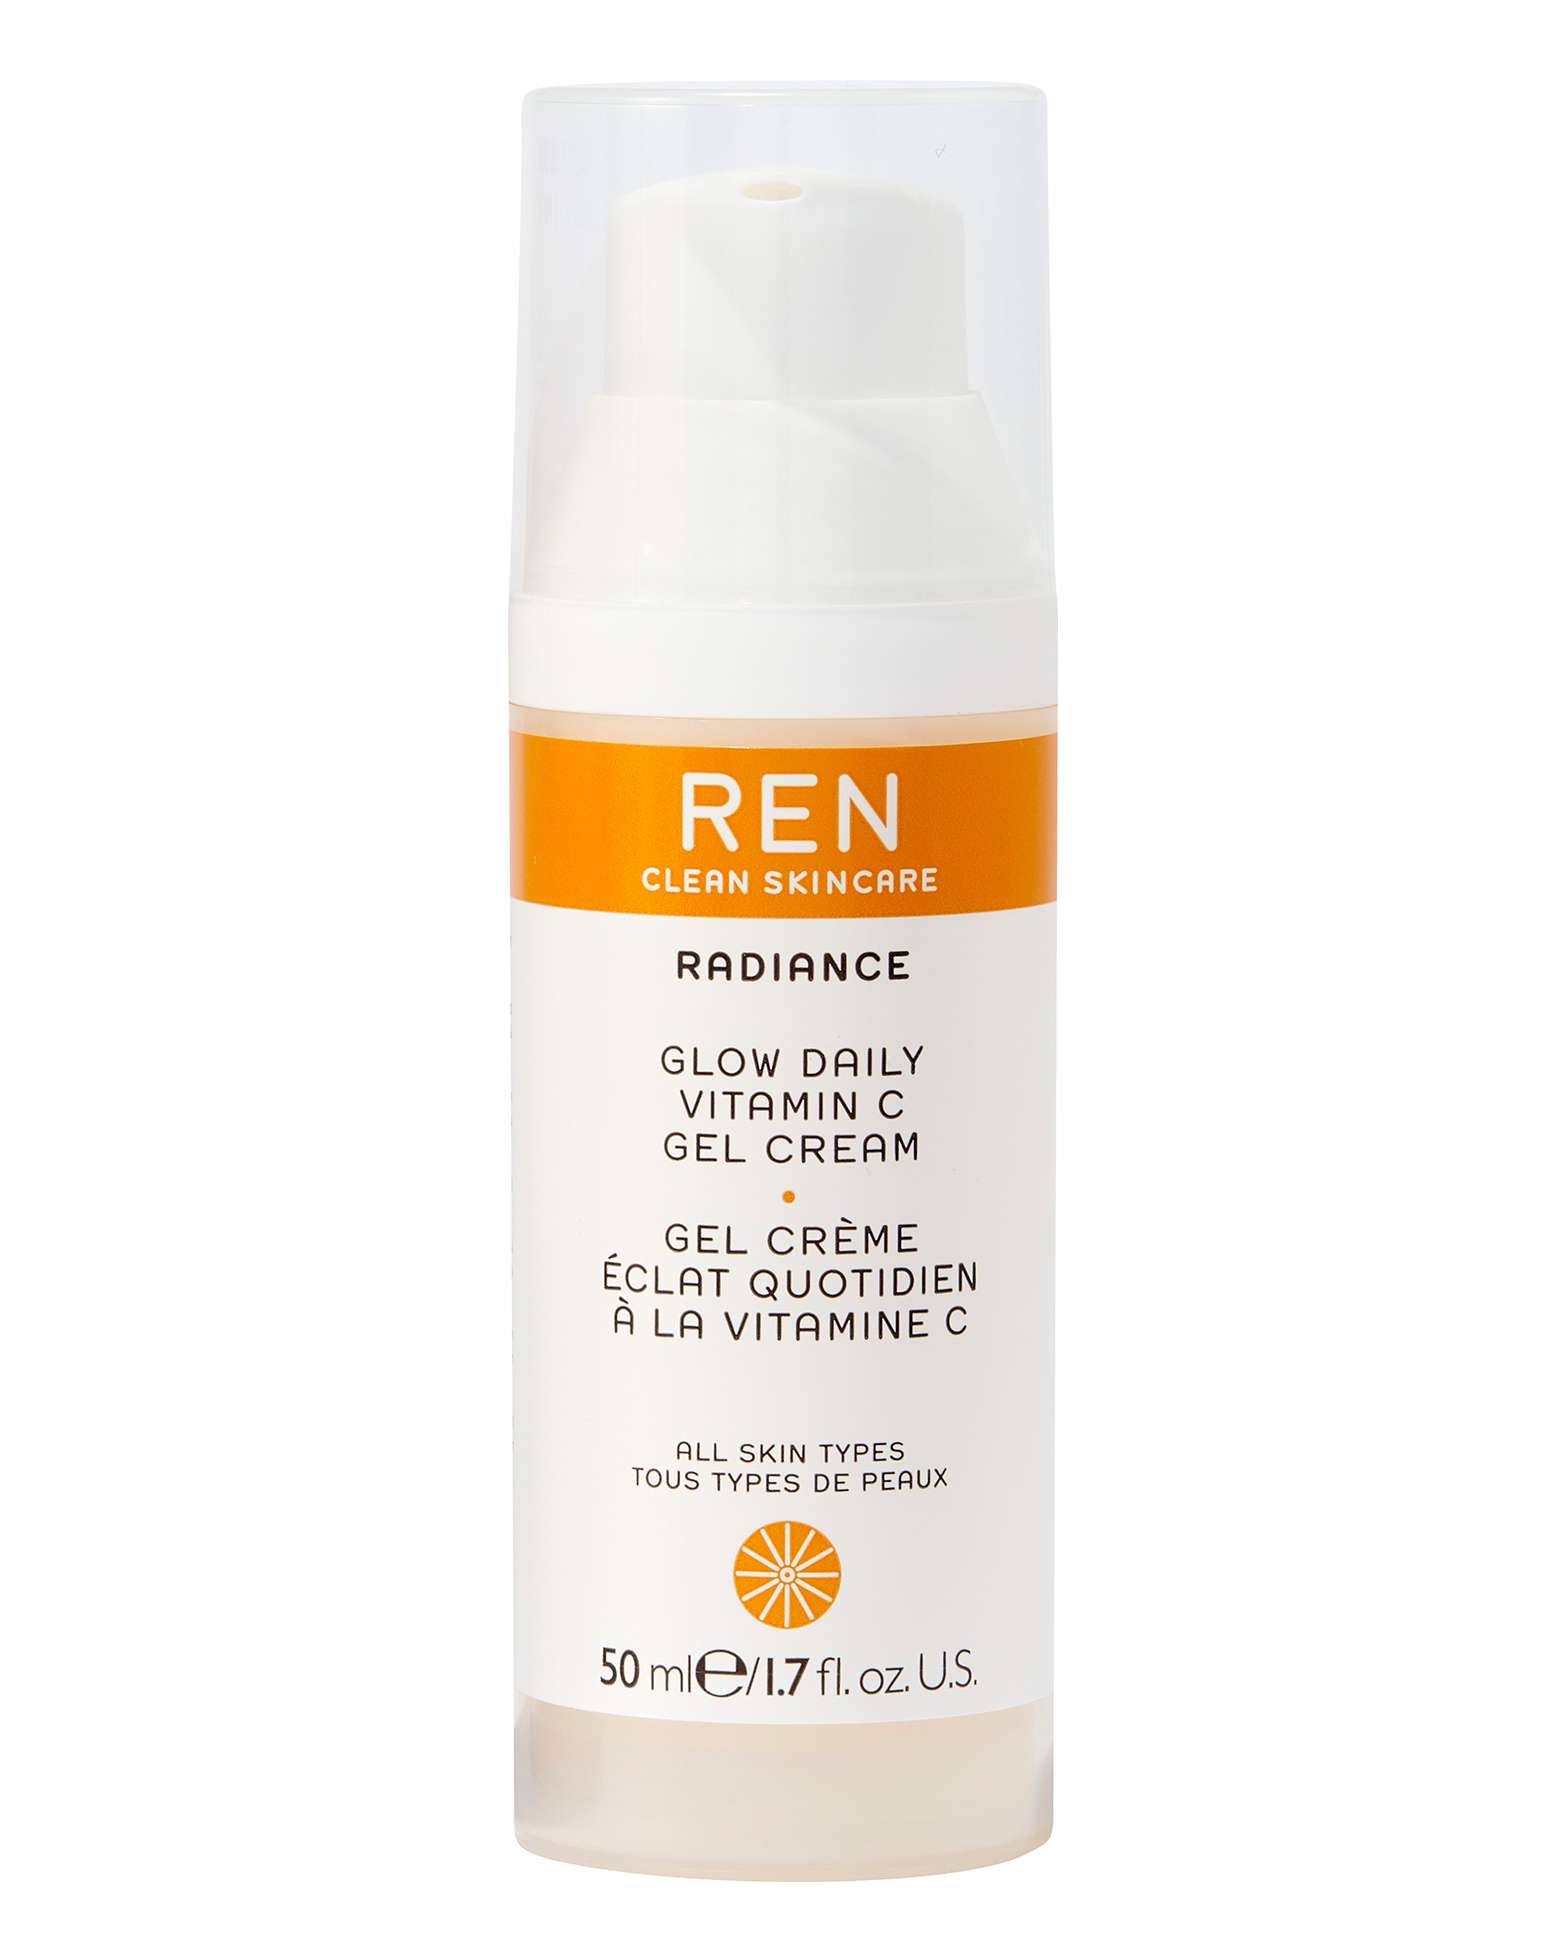 REN - Radiance Glow Daily Vitamin C Gel Cream 50 ml